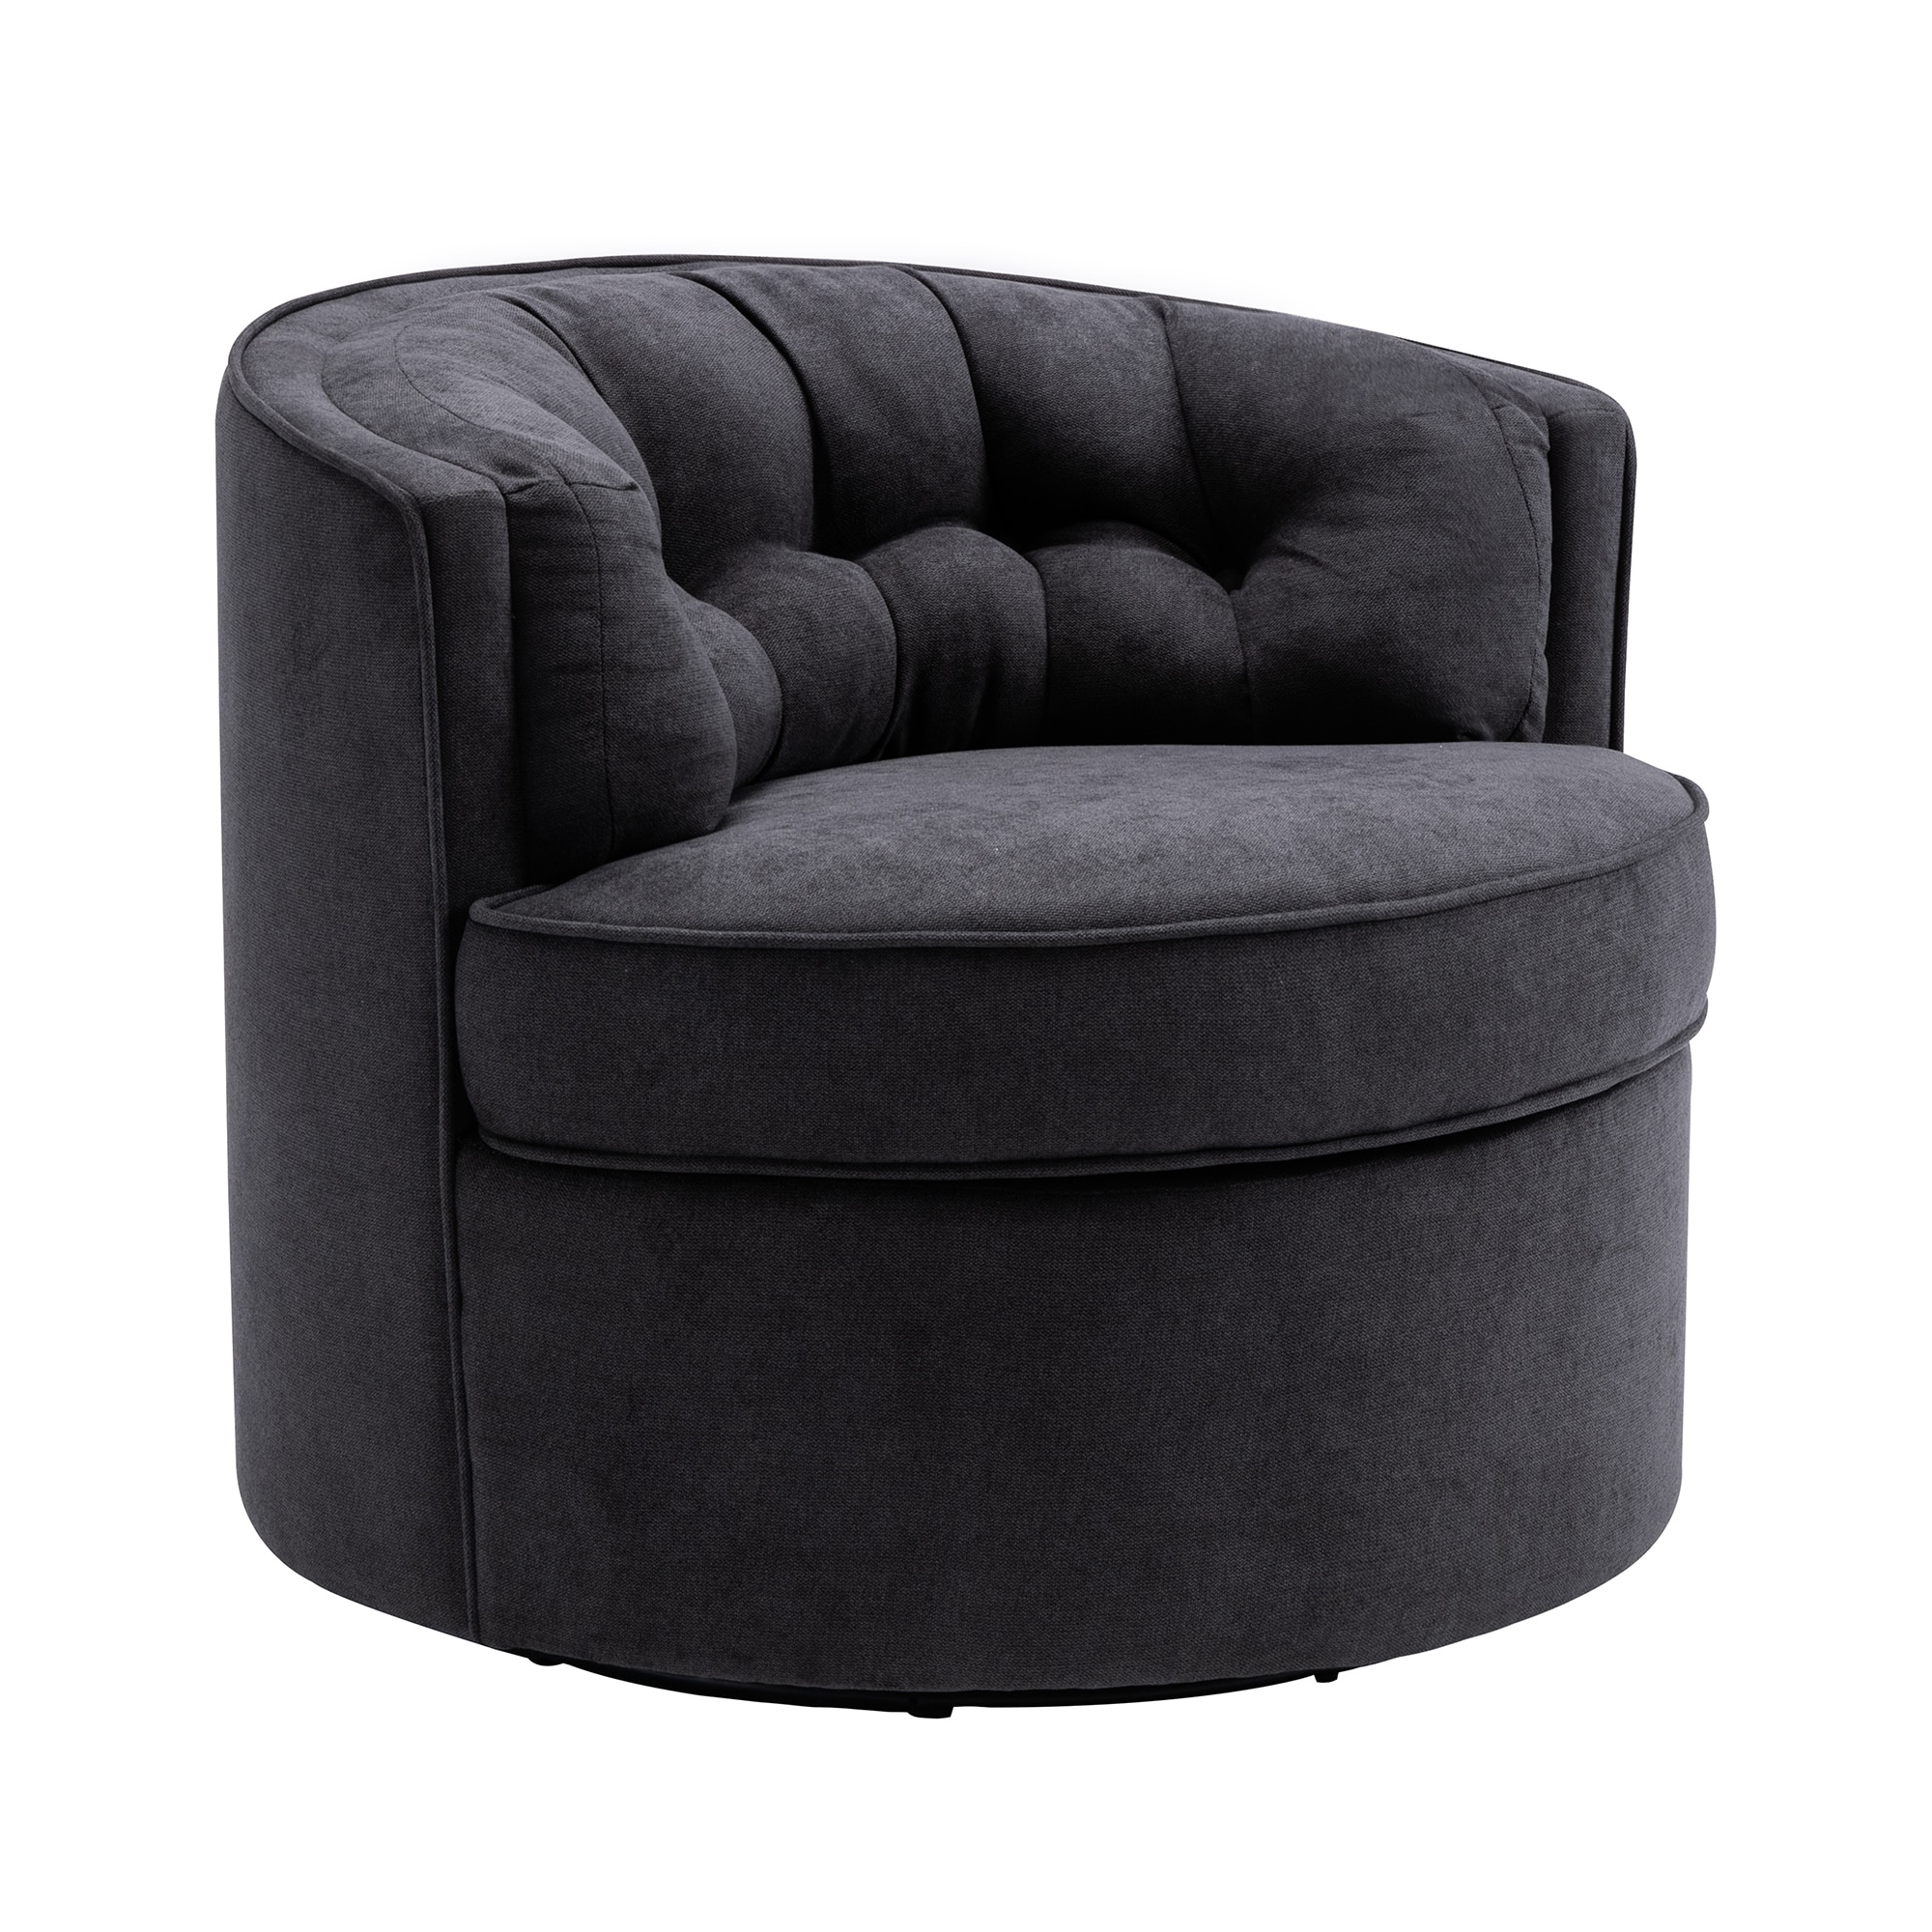 CASAINC Casual Black Velvet Accent Chair at Lowes.com